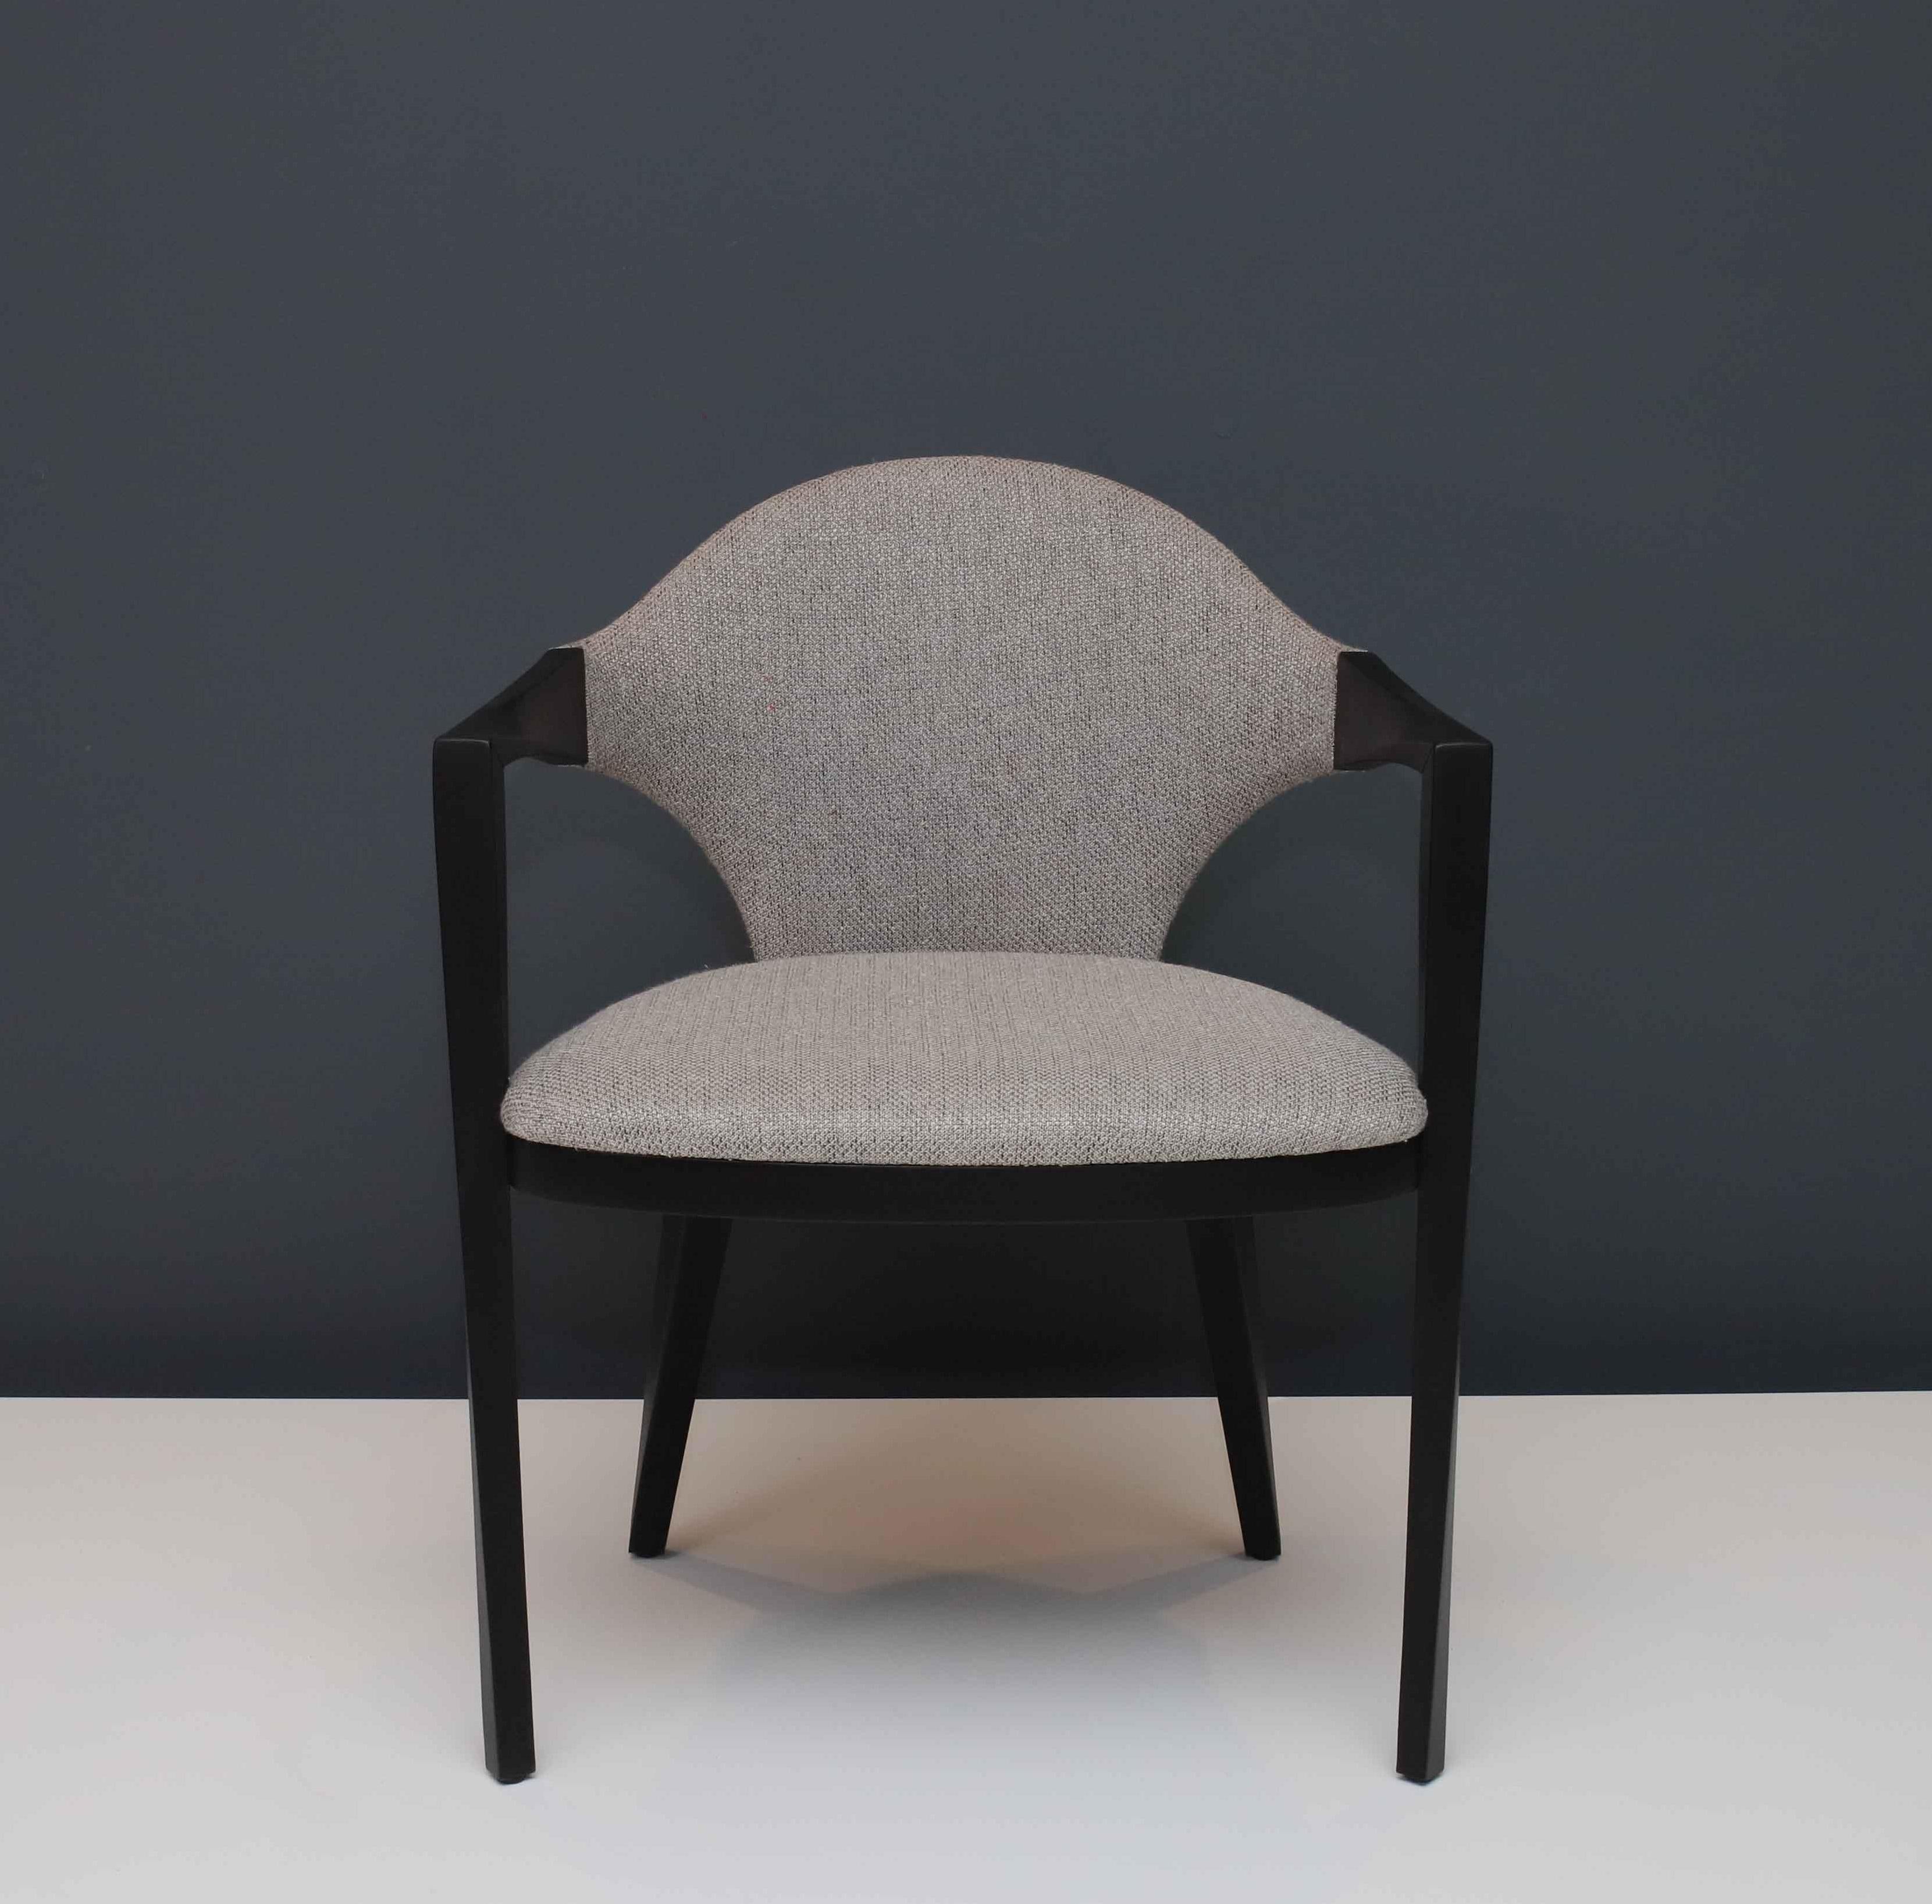 L'une des hypothèses du projet pour cette chaise était le dialogue formel intense entre différents matériaux comme le bois et le tissu. Les concepteurs sont parvenus à une trace qui interconnecte de manière fluide et continue ces deux